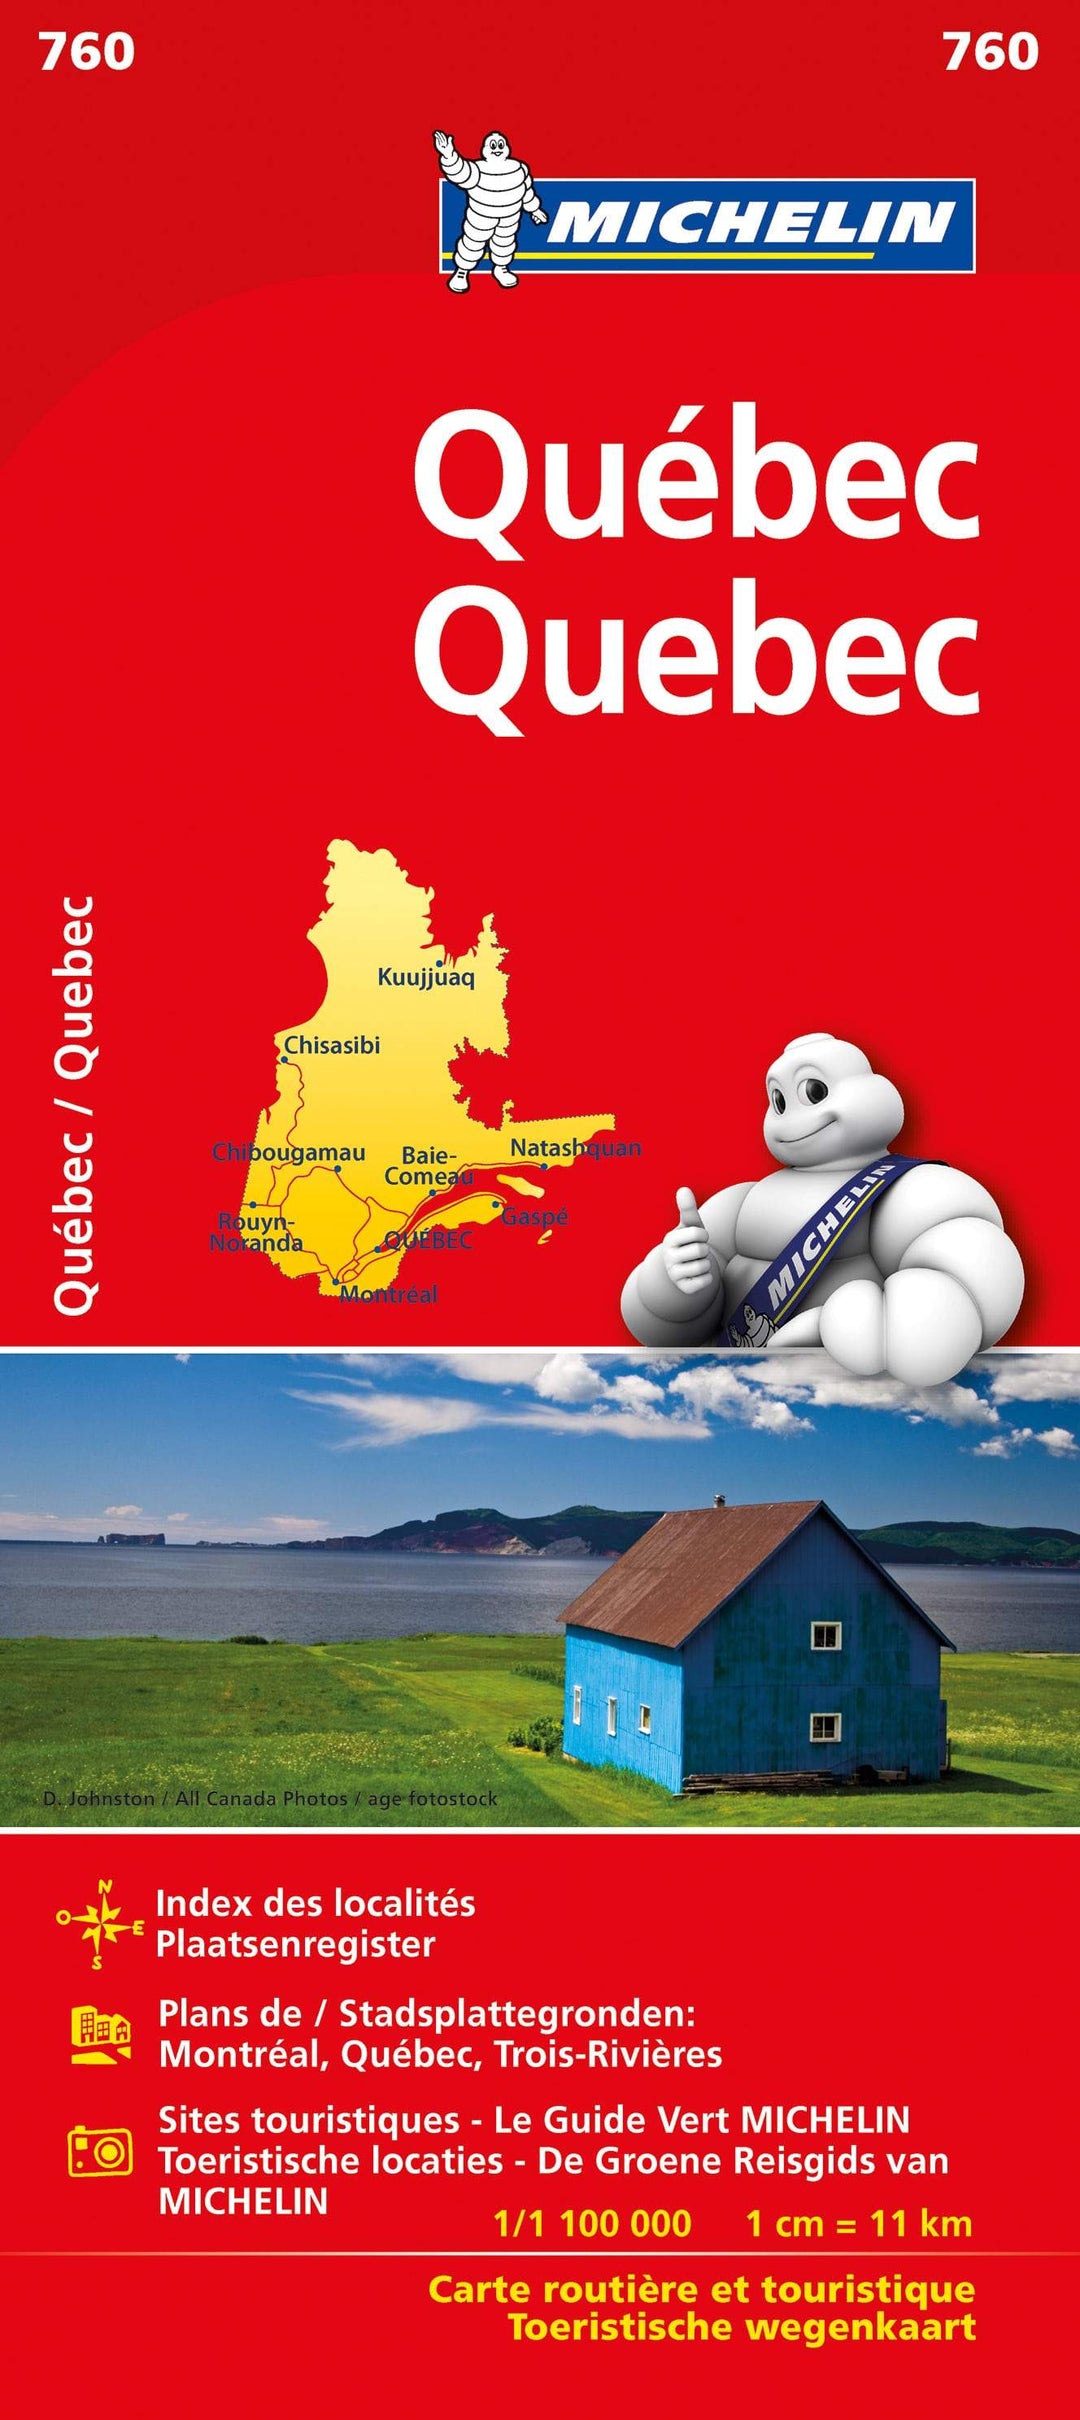 Le Québec est numéro 1!